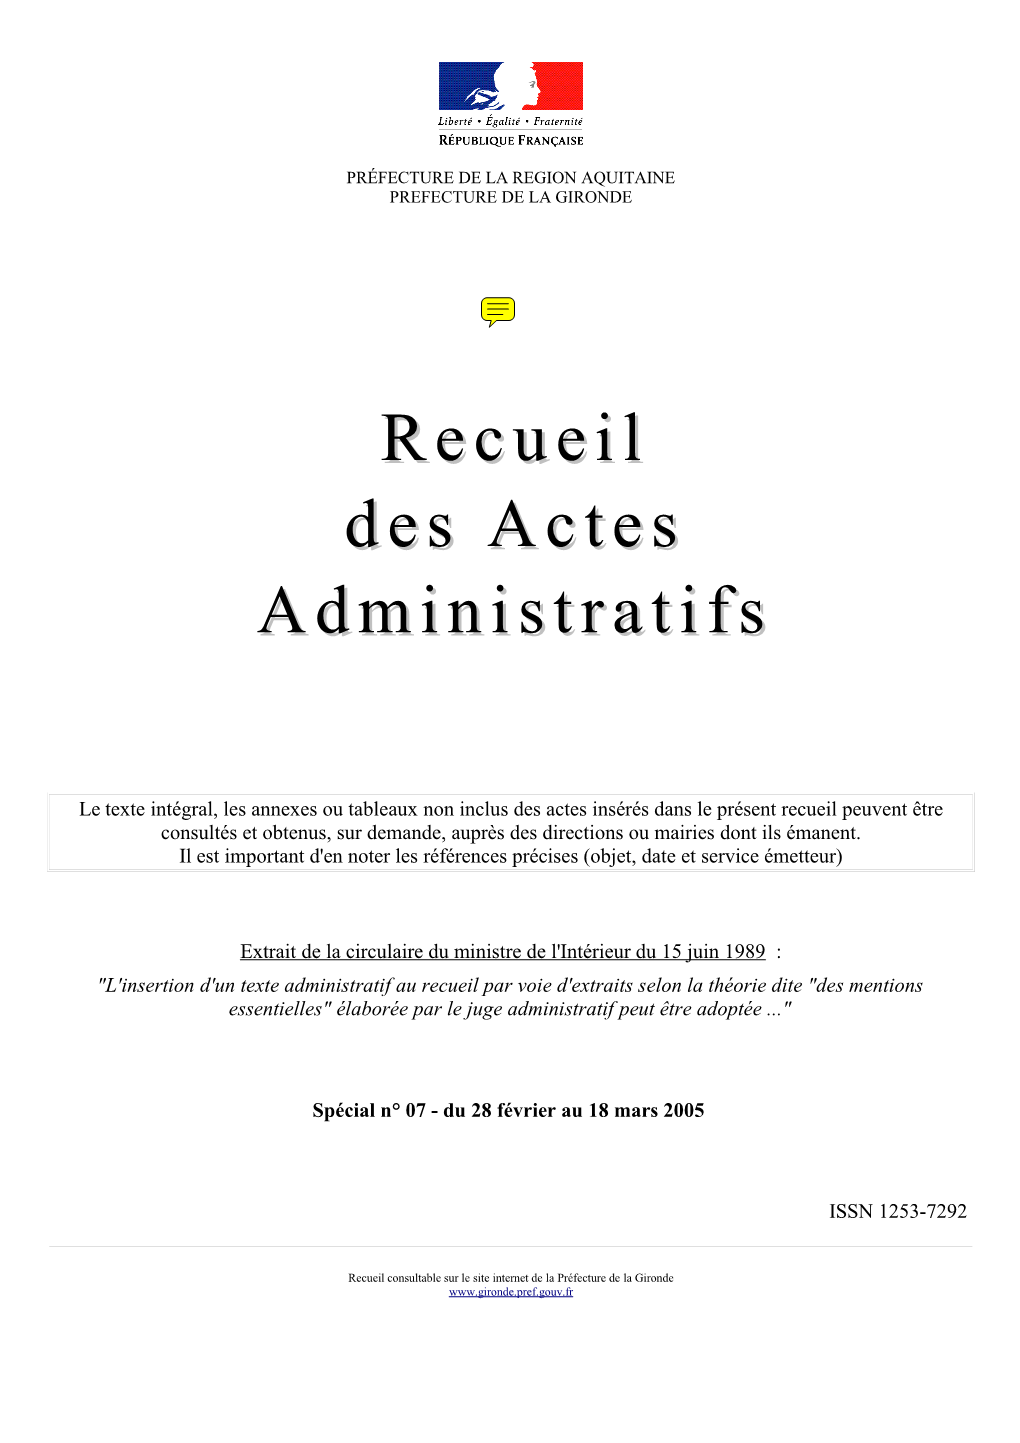 Recueil Des Actes Administratifs - Spécial N° 07 - Du 28 Février Au 18 Mars 2005 – Page 2 AFFAIRES MARITIMES